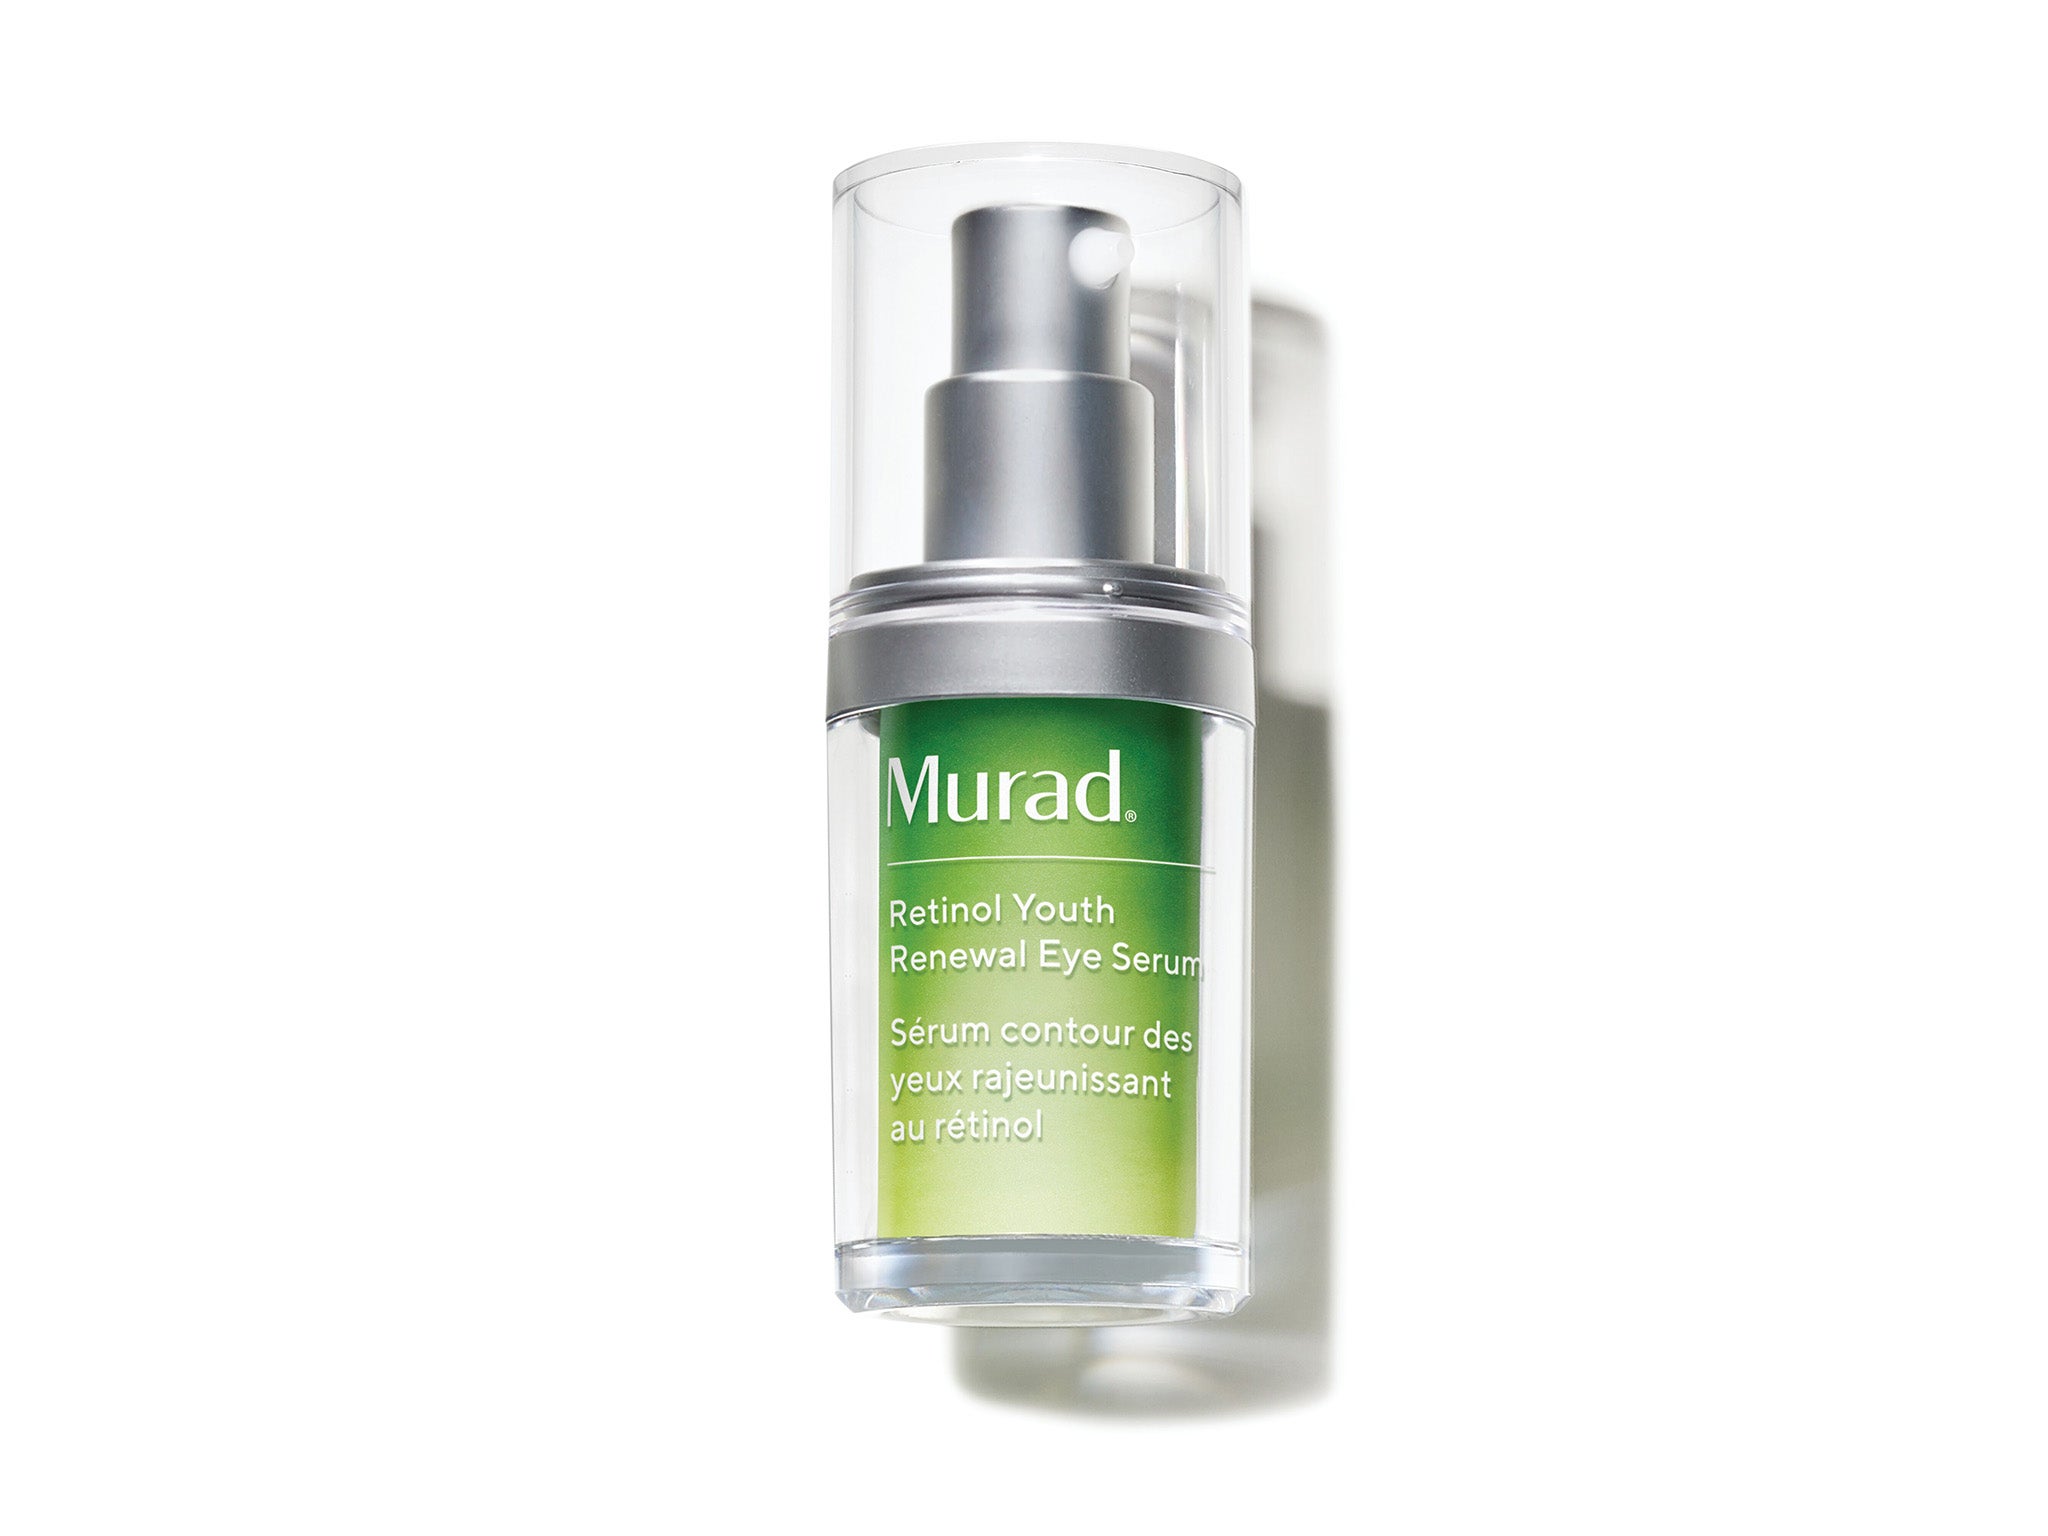 Murad retinol youth renewal eye serum